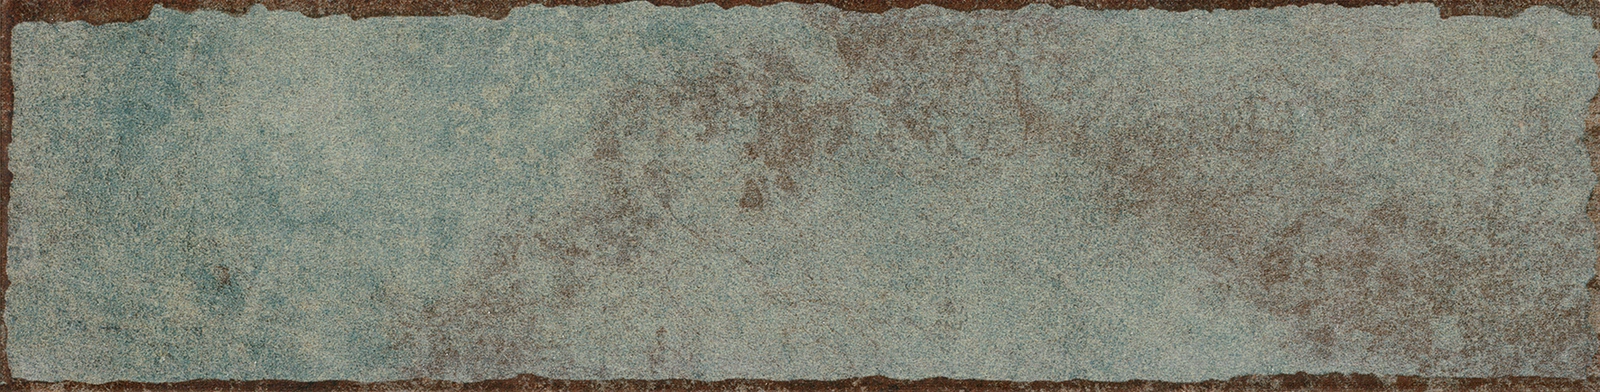 Obklad matný Al-loy Mint 7,5x30